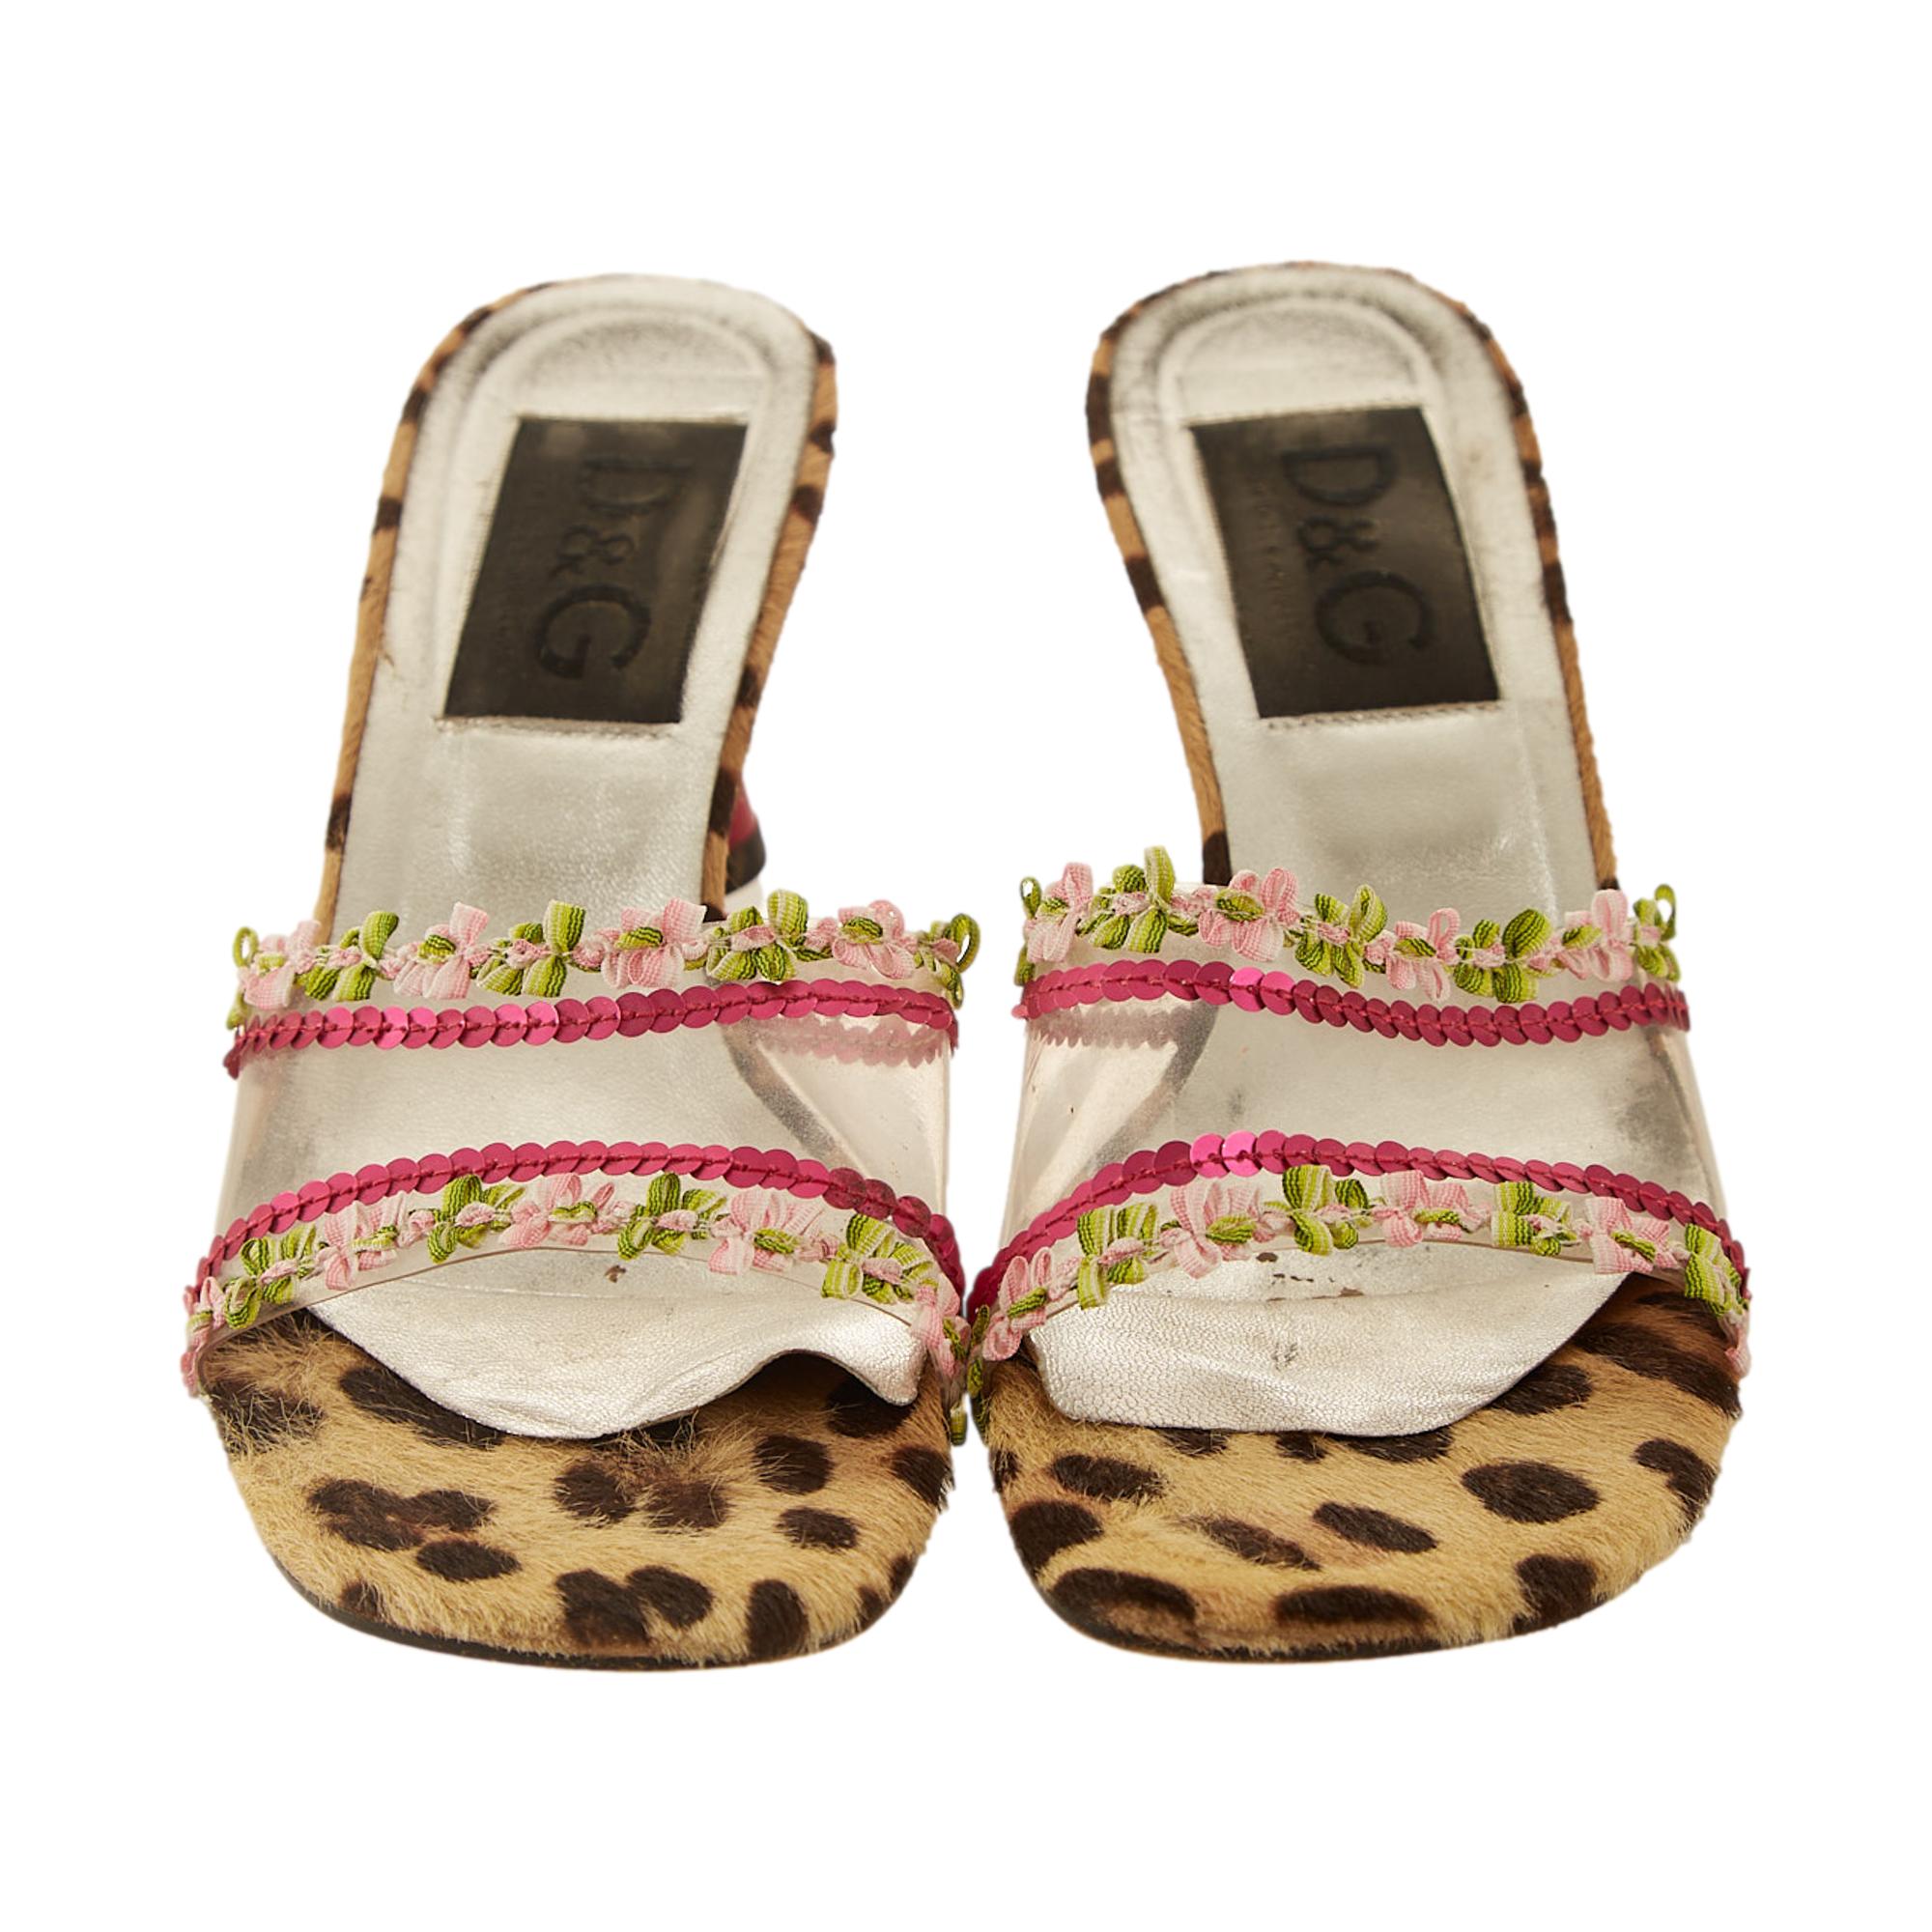 Dolce & Gabbana Cheetah Print Floral Kitten Heels